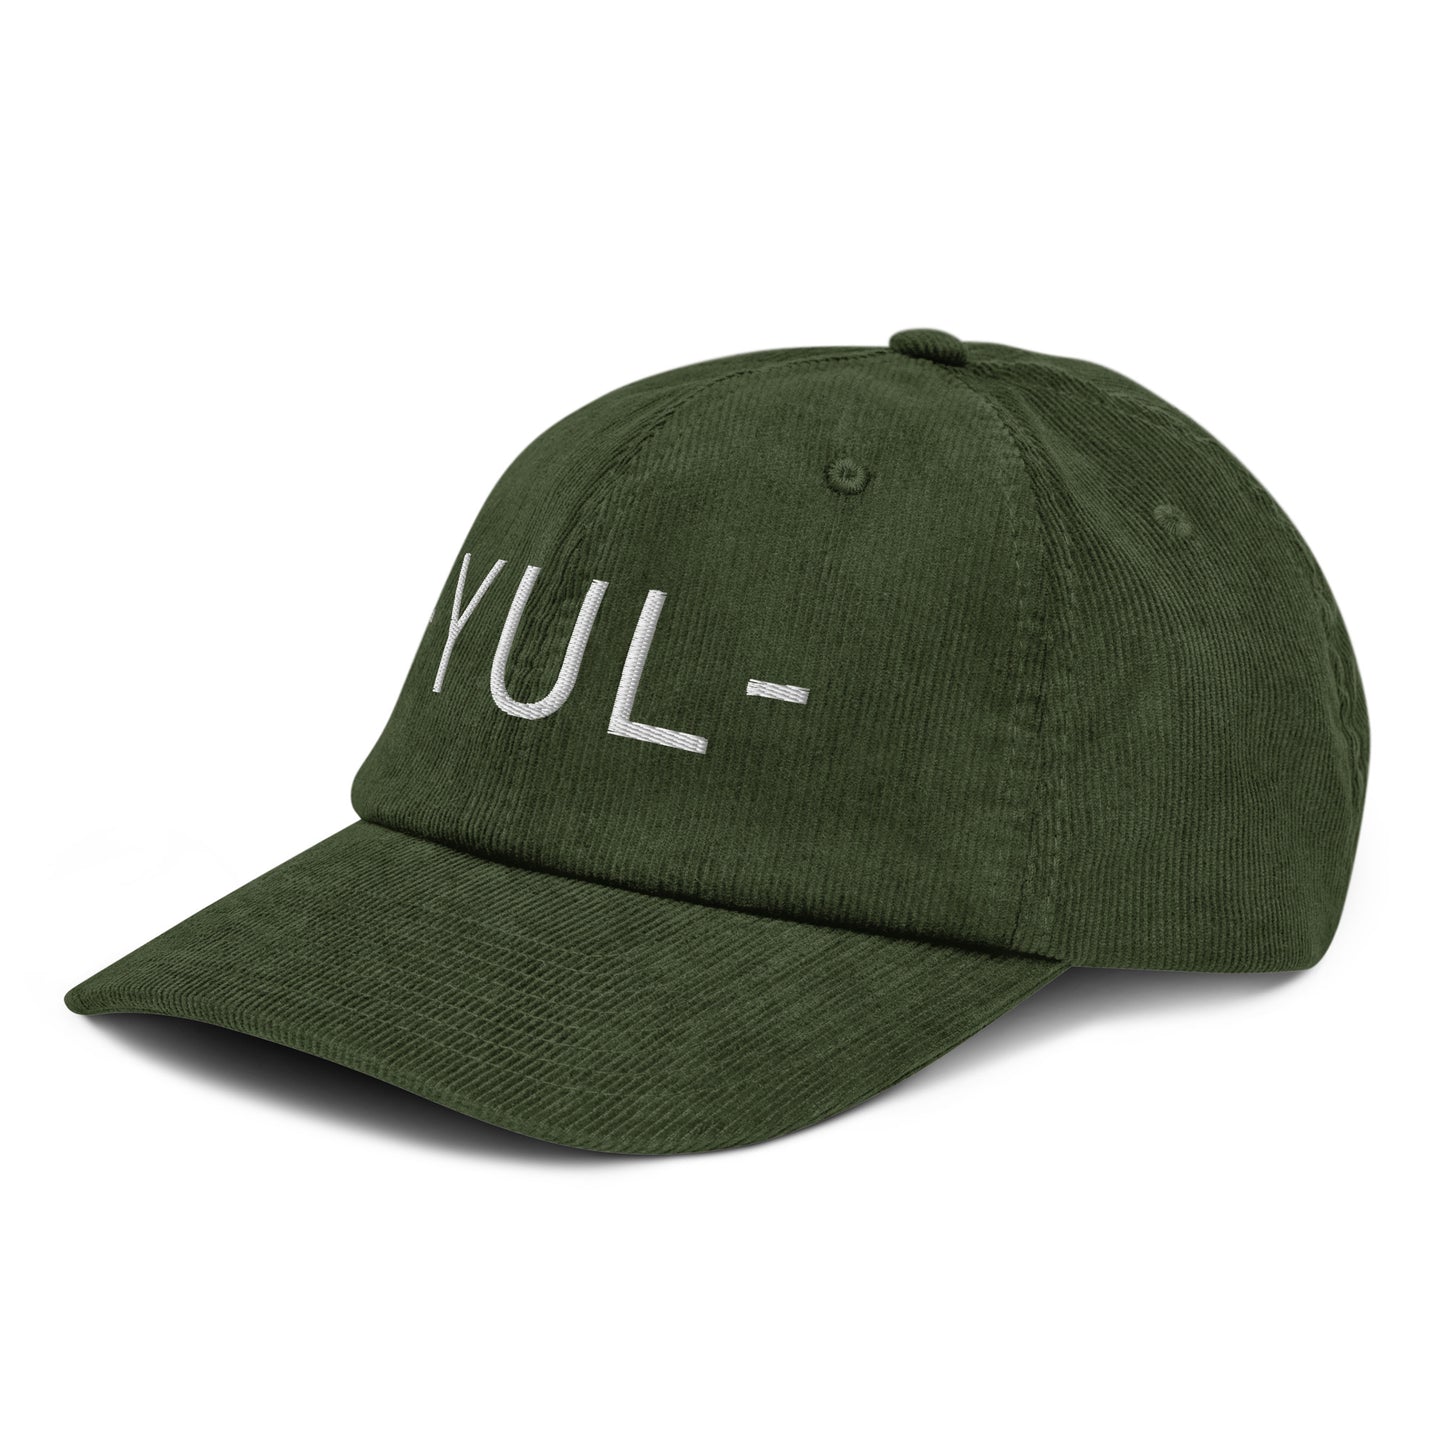 Souvenir Corduroy Hat - White • YUL Montreal • YHM Designs - Image 17